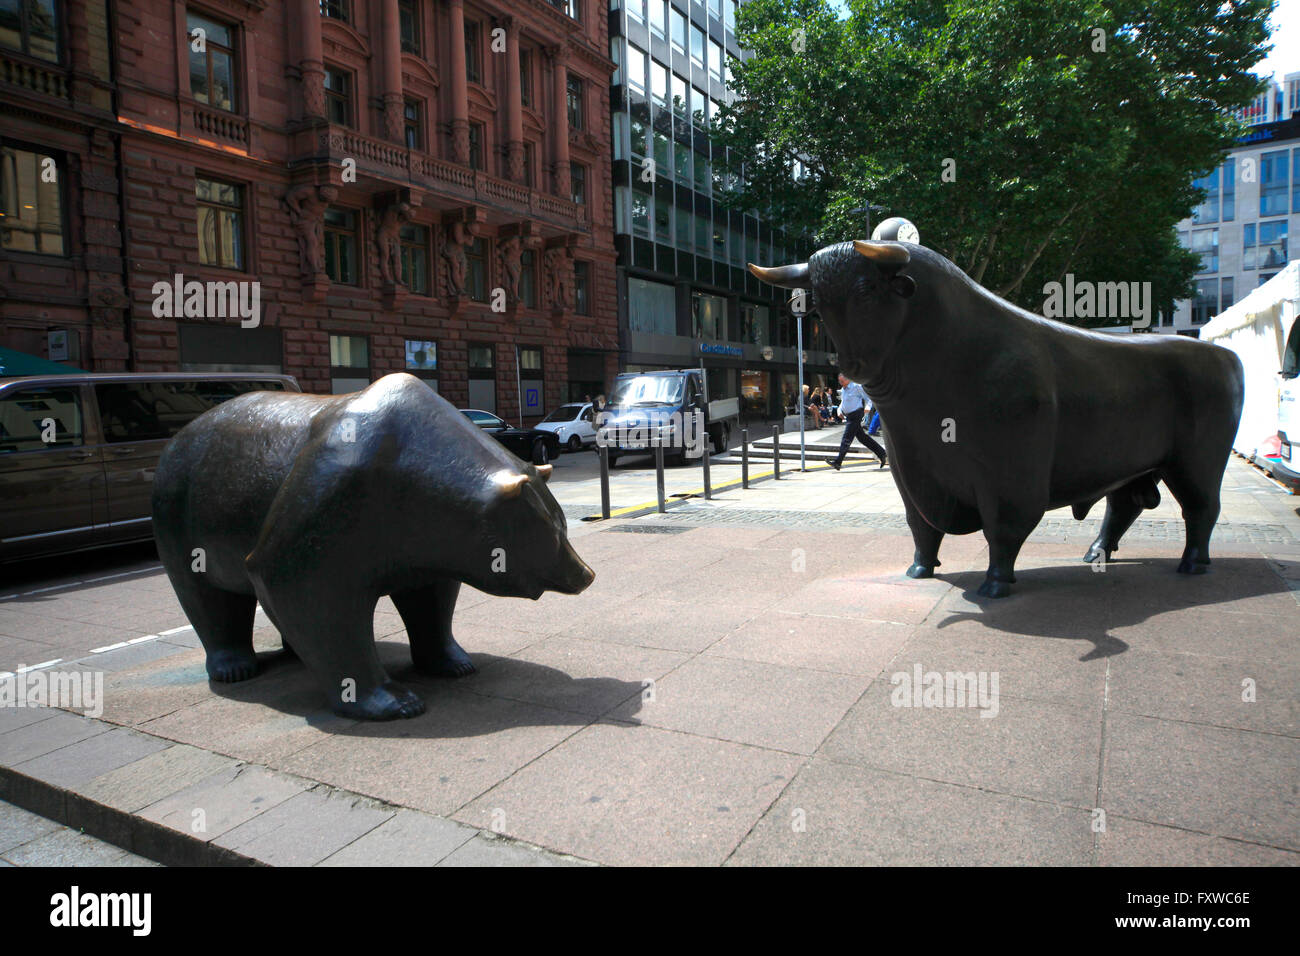 Die Bulle Und Bär-Statuen an Redaktionelles Stockbild - Bild von  finanziell, geld: 41253689